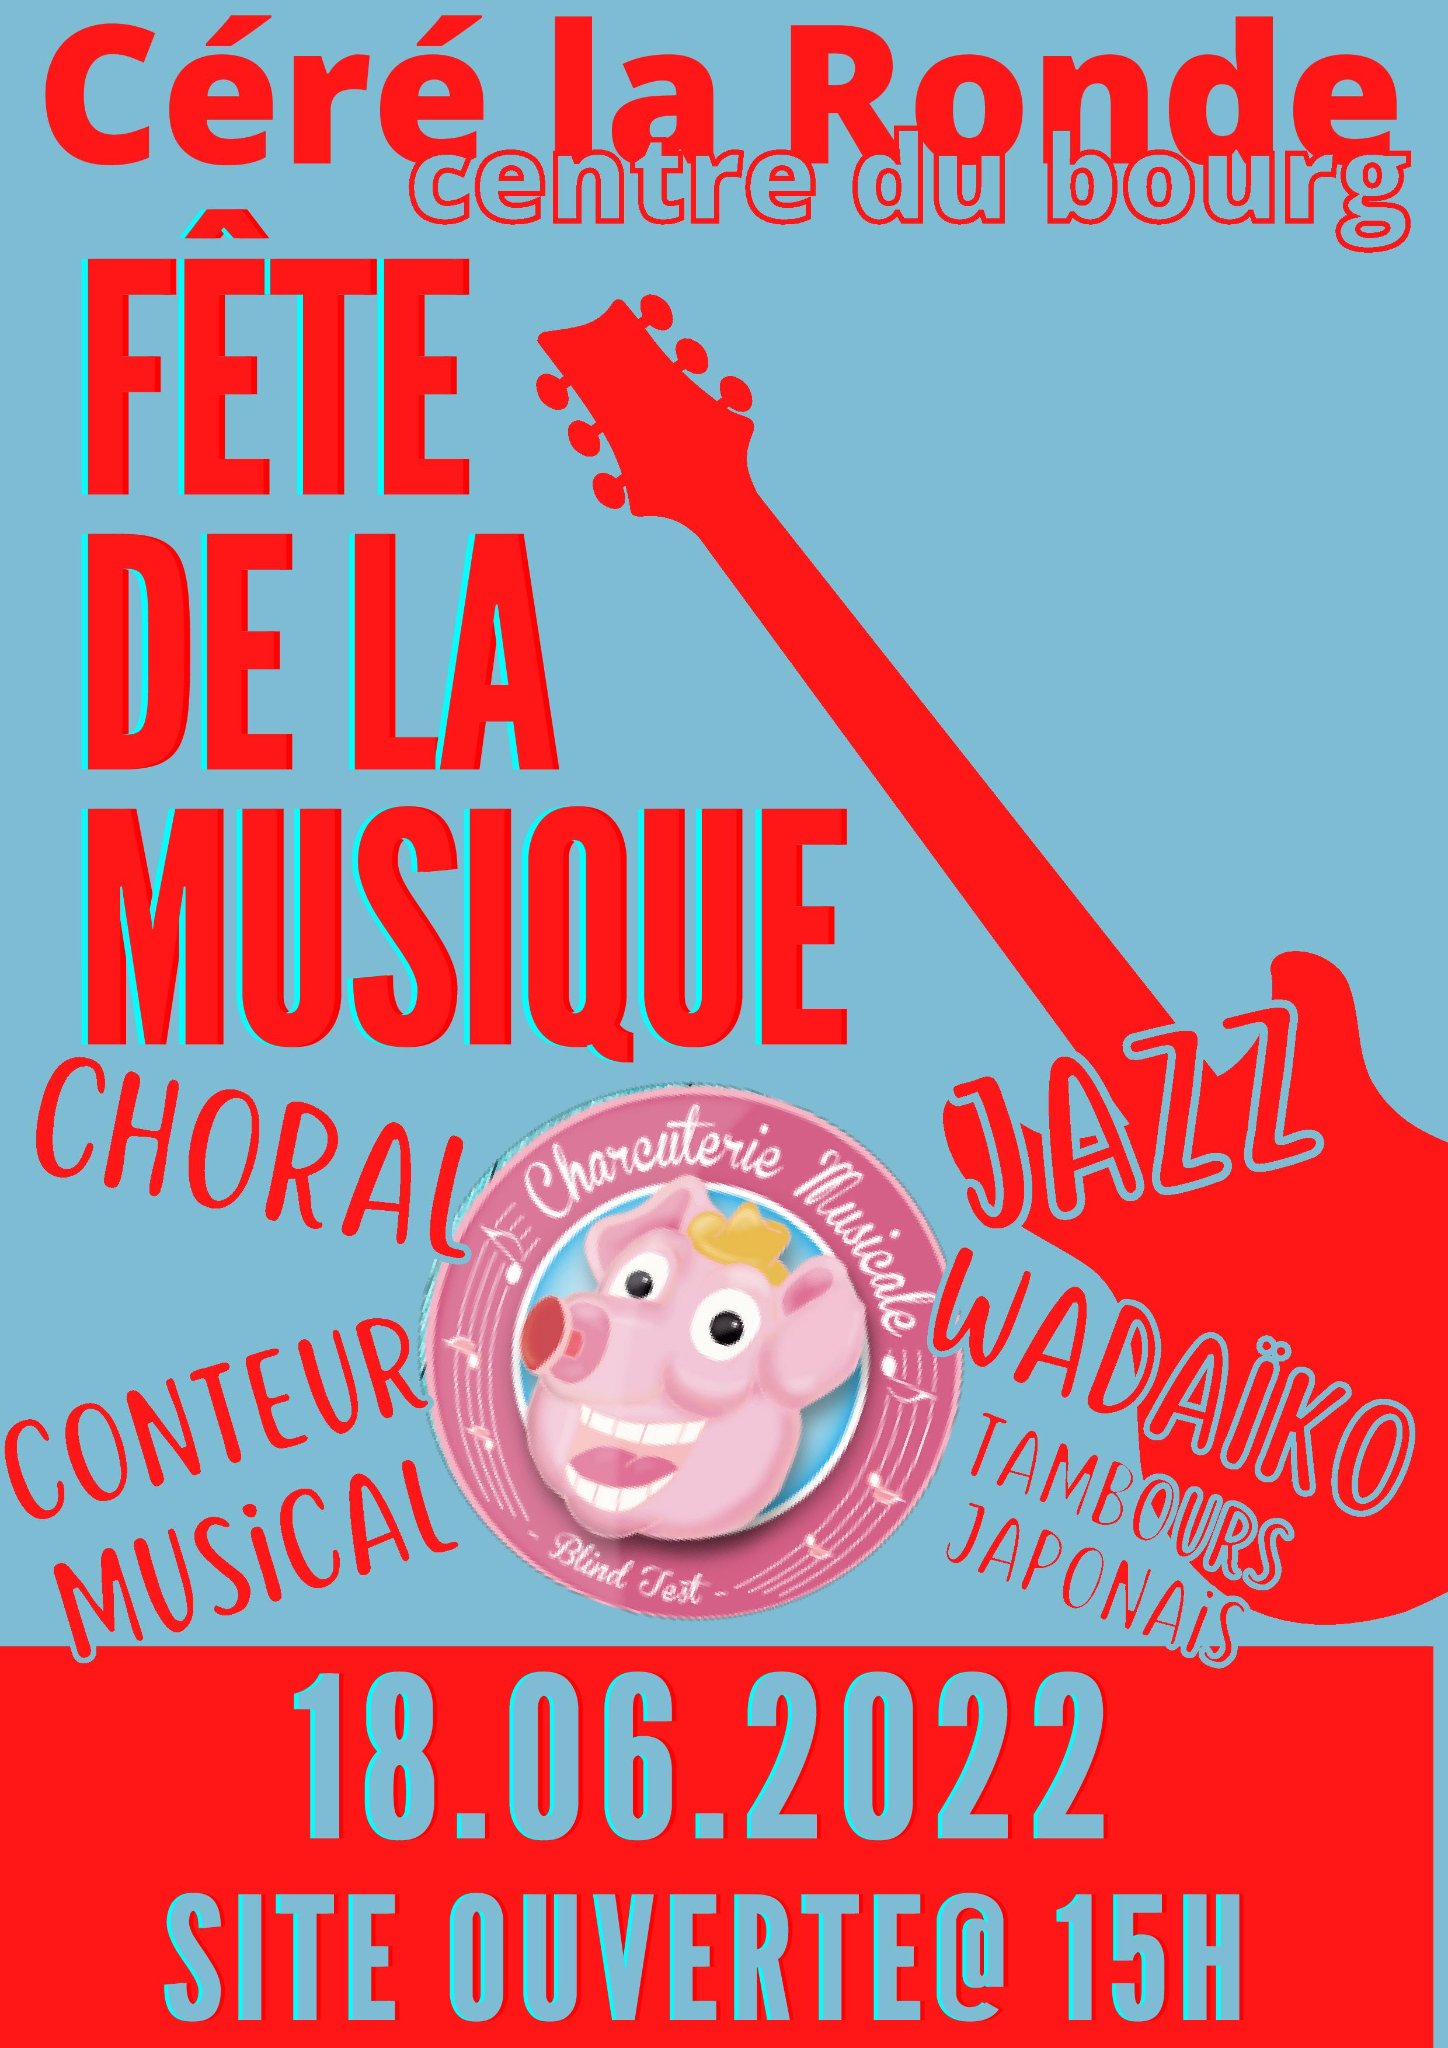 fête de la musique 18 juin 2022 Céré la Ronde